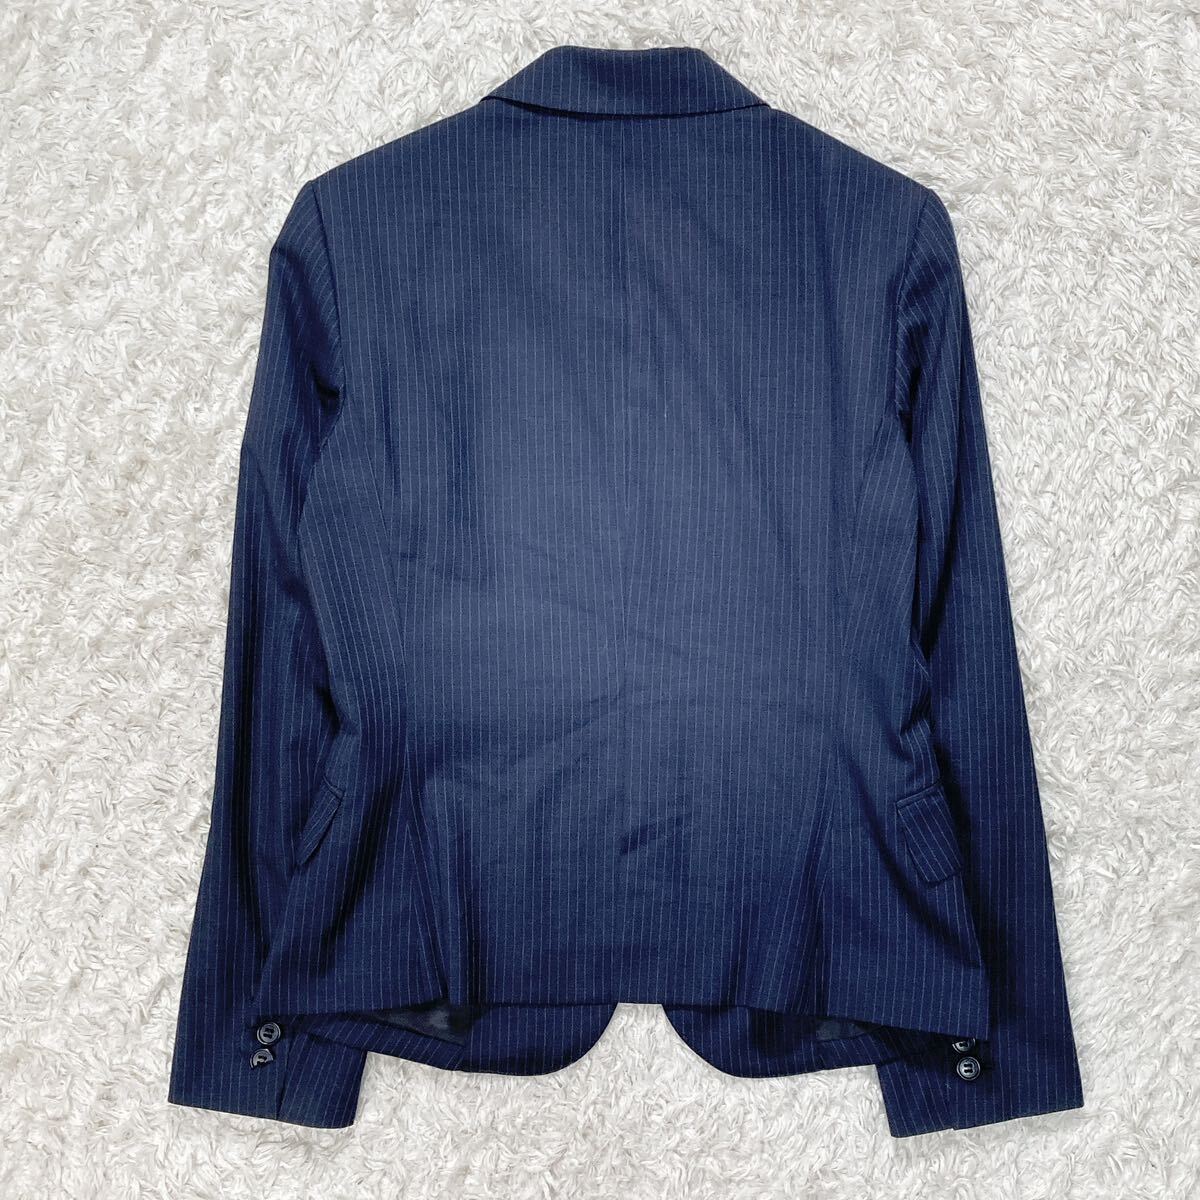 THE SUIT COMPANY ザスーツカンパニー スーツ ジャケット パンツ ビジネススーツ レディース 42 ネイビー B32431-84の画像3